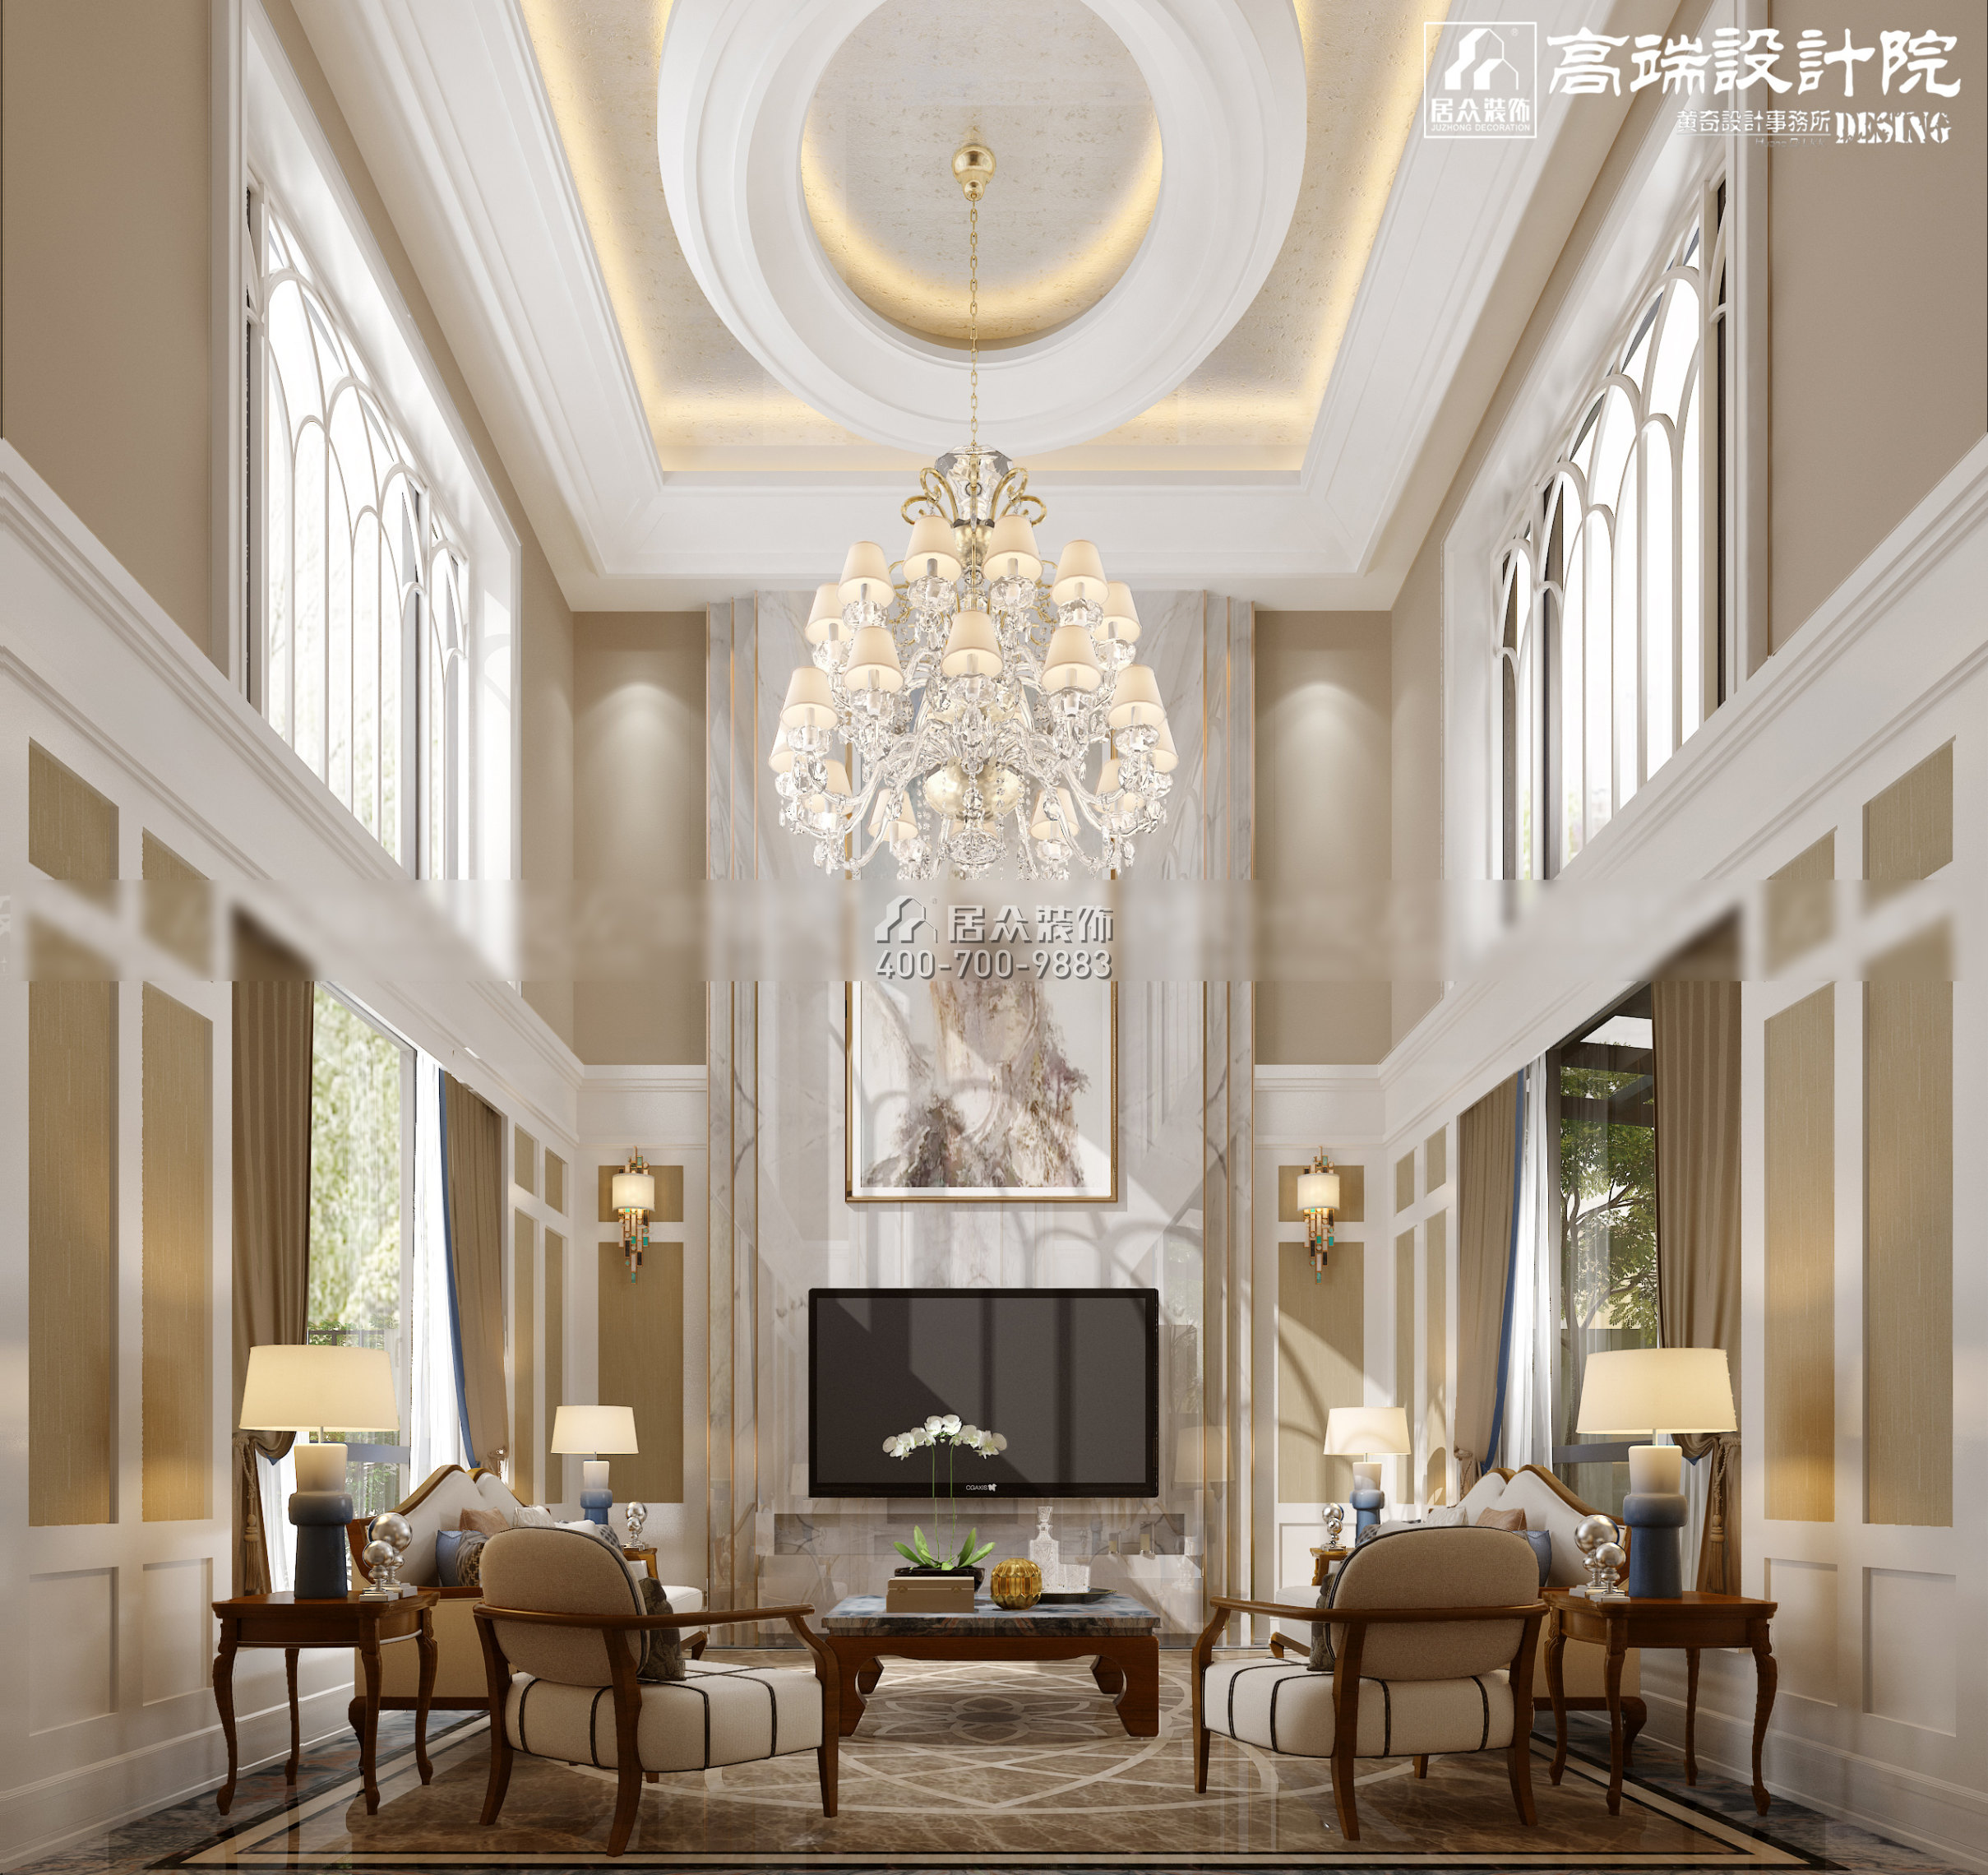 湘江一號560平方米其他風格別墅戶型客廳裝修效果圖